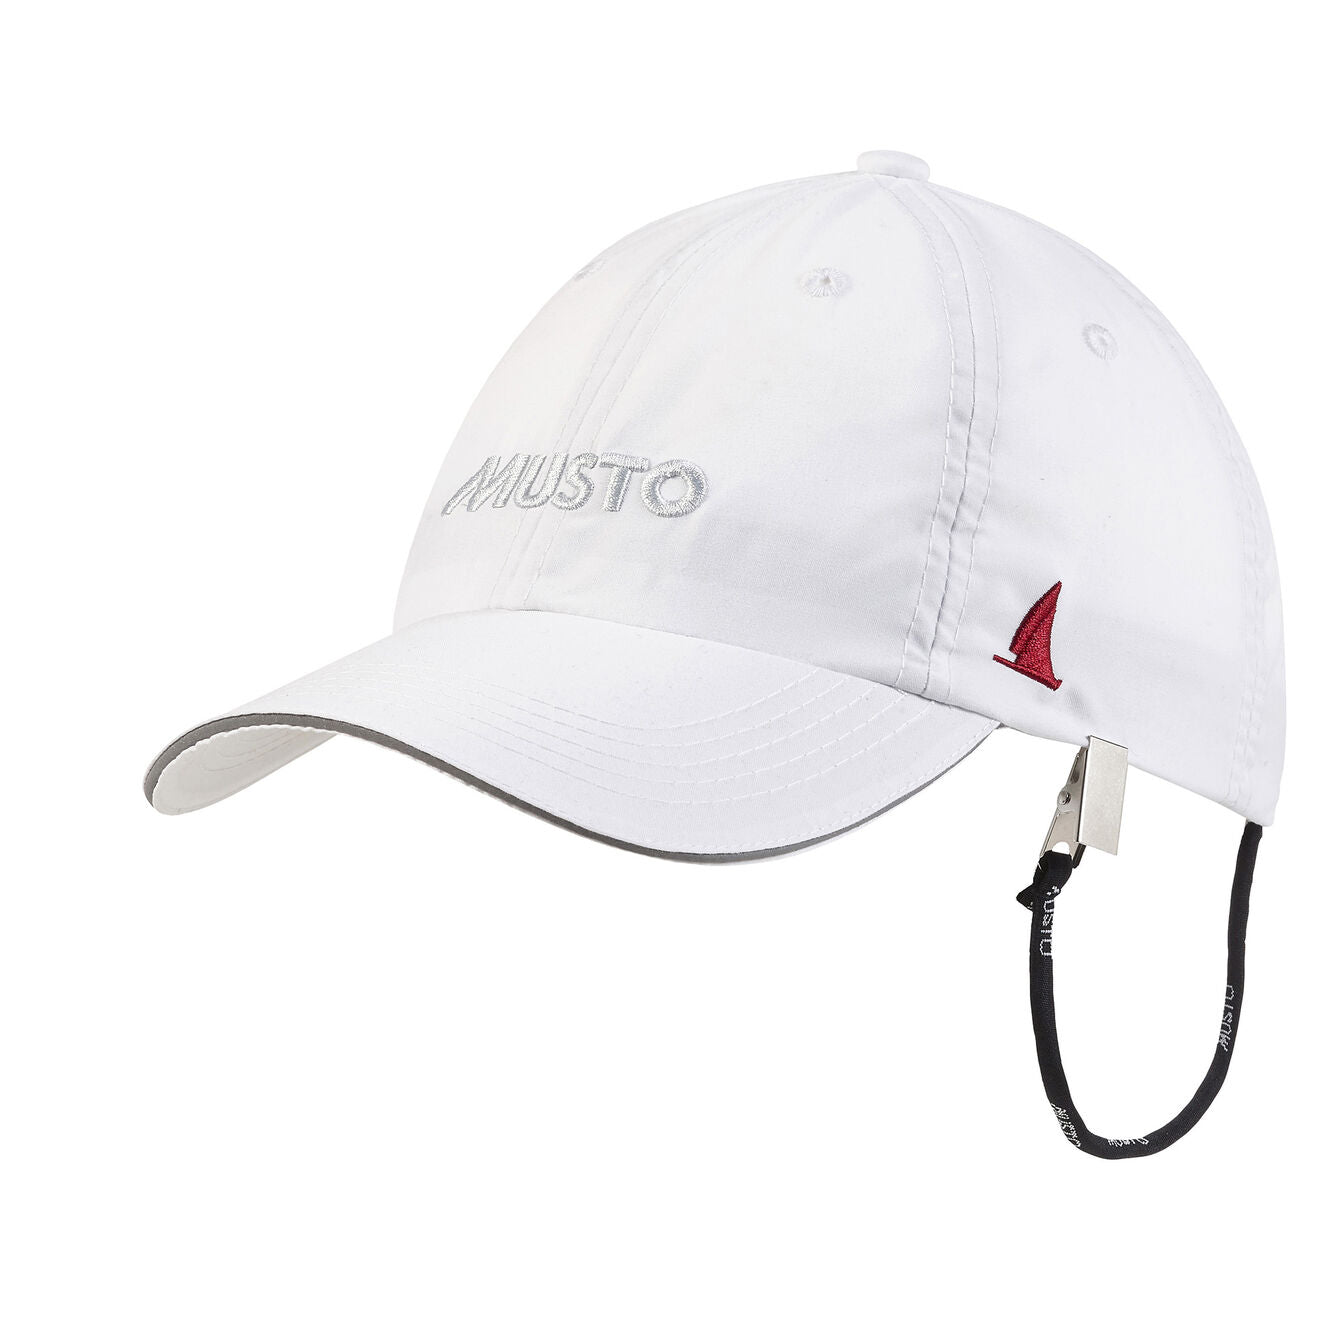 MUSTO Cap - Essential Evo Fast Dry Crew Cap - White